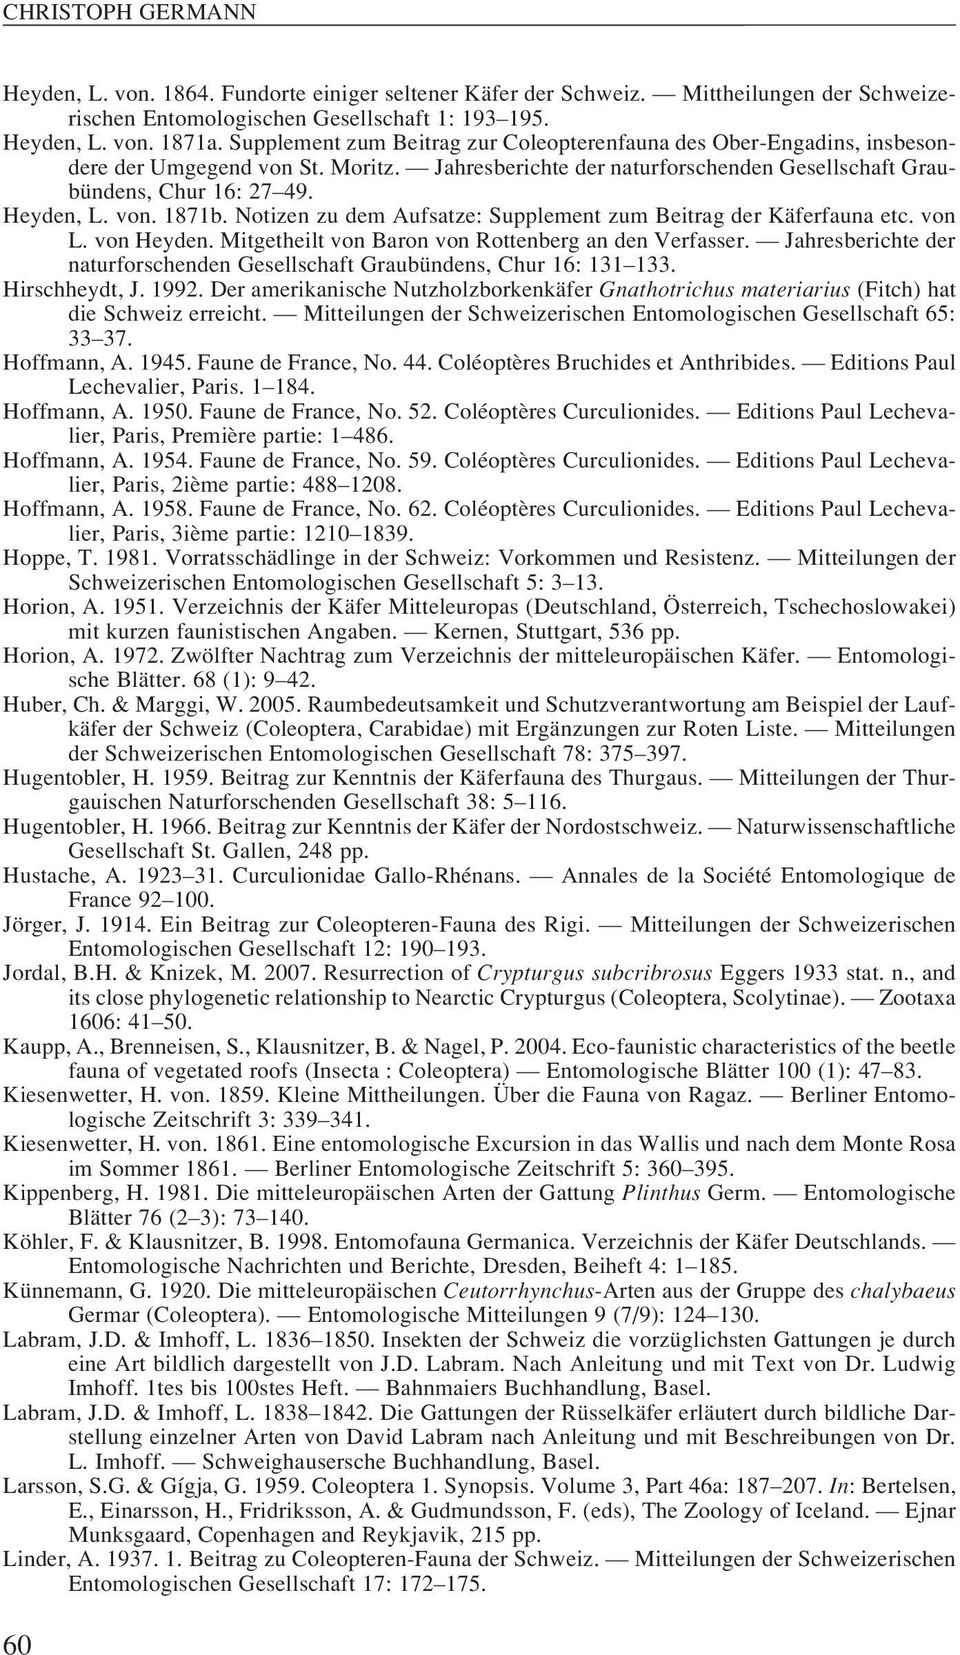 Heyden, L. von. 1871b. Notizen zu dem Aufsatze: Supplement zum Beitrag der Käferfauna etc. von L. von Heyden. Mitgetheilt von Baron von Rottenberg an den Verfasser.